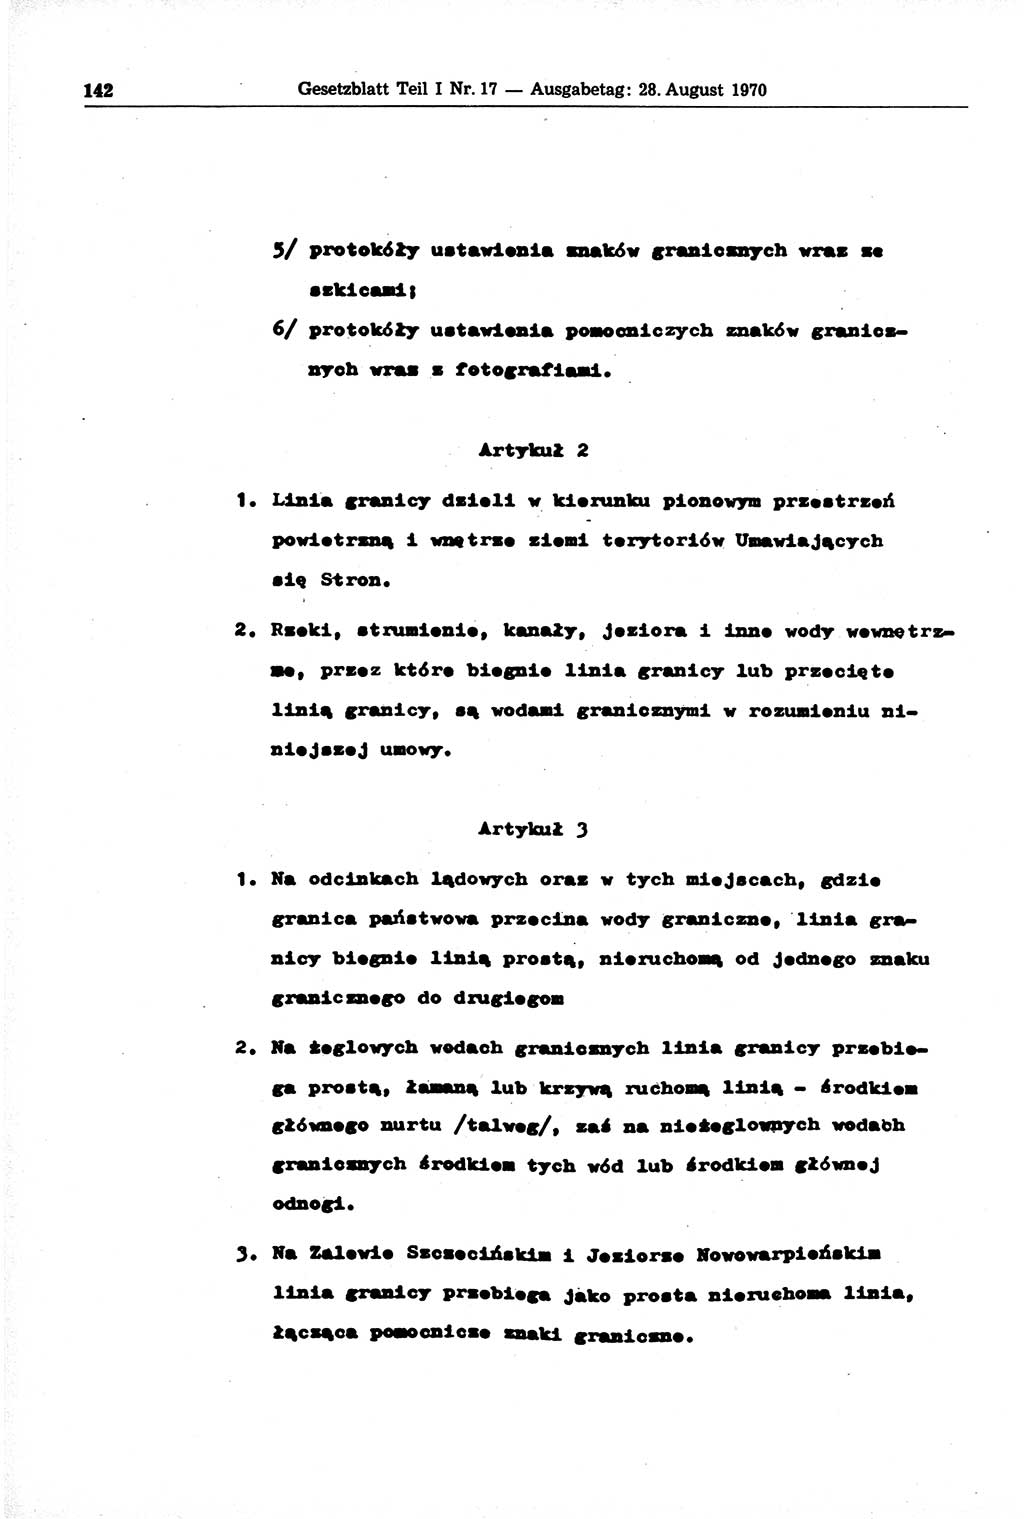 Gesetzblatt (GBl.) der Deutschen Demokratischen Republik (DDR) Teil Ⅰ 1970, Seite 142 (GBl. DDR Ⅰ 1970, S. 142)